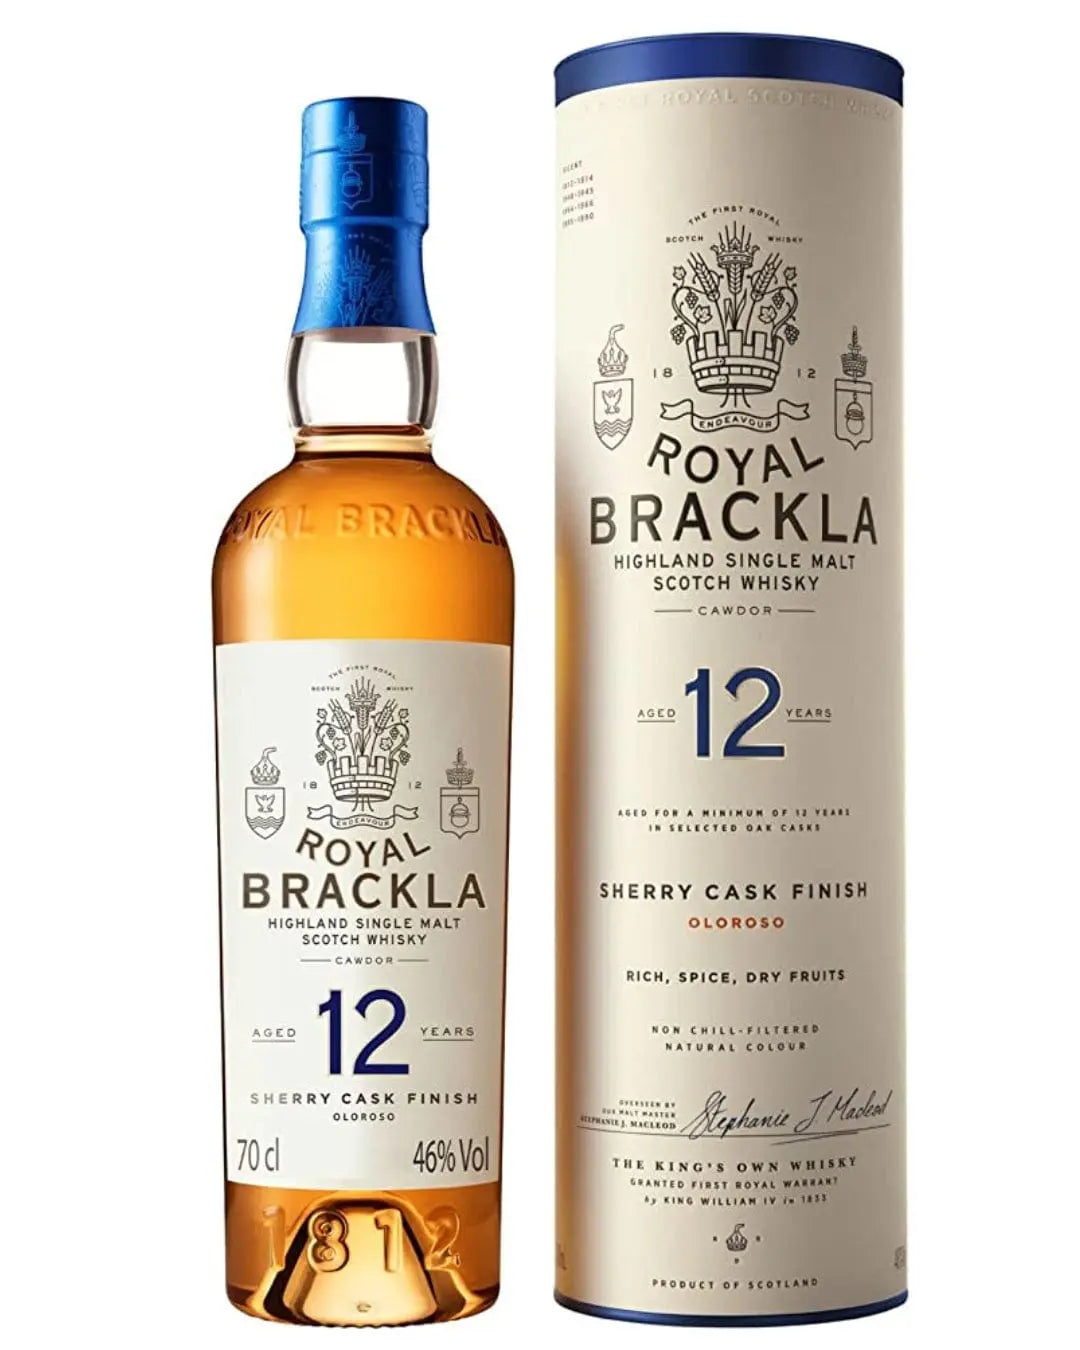 Royal Brackla 12 Year Old Highland Single Malt Scotch Whisky, 70 cl Whisky